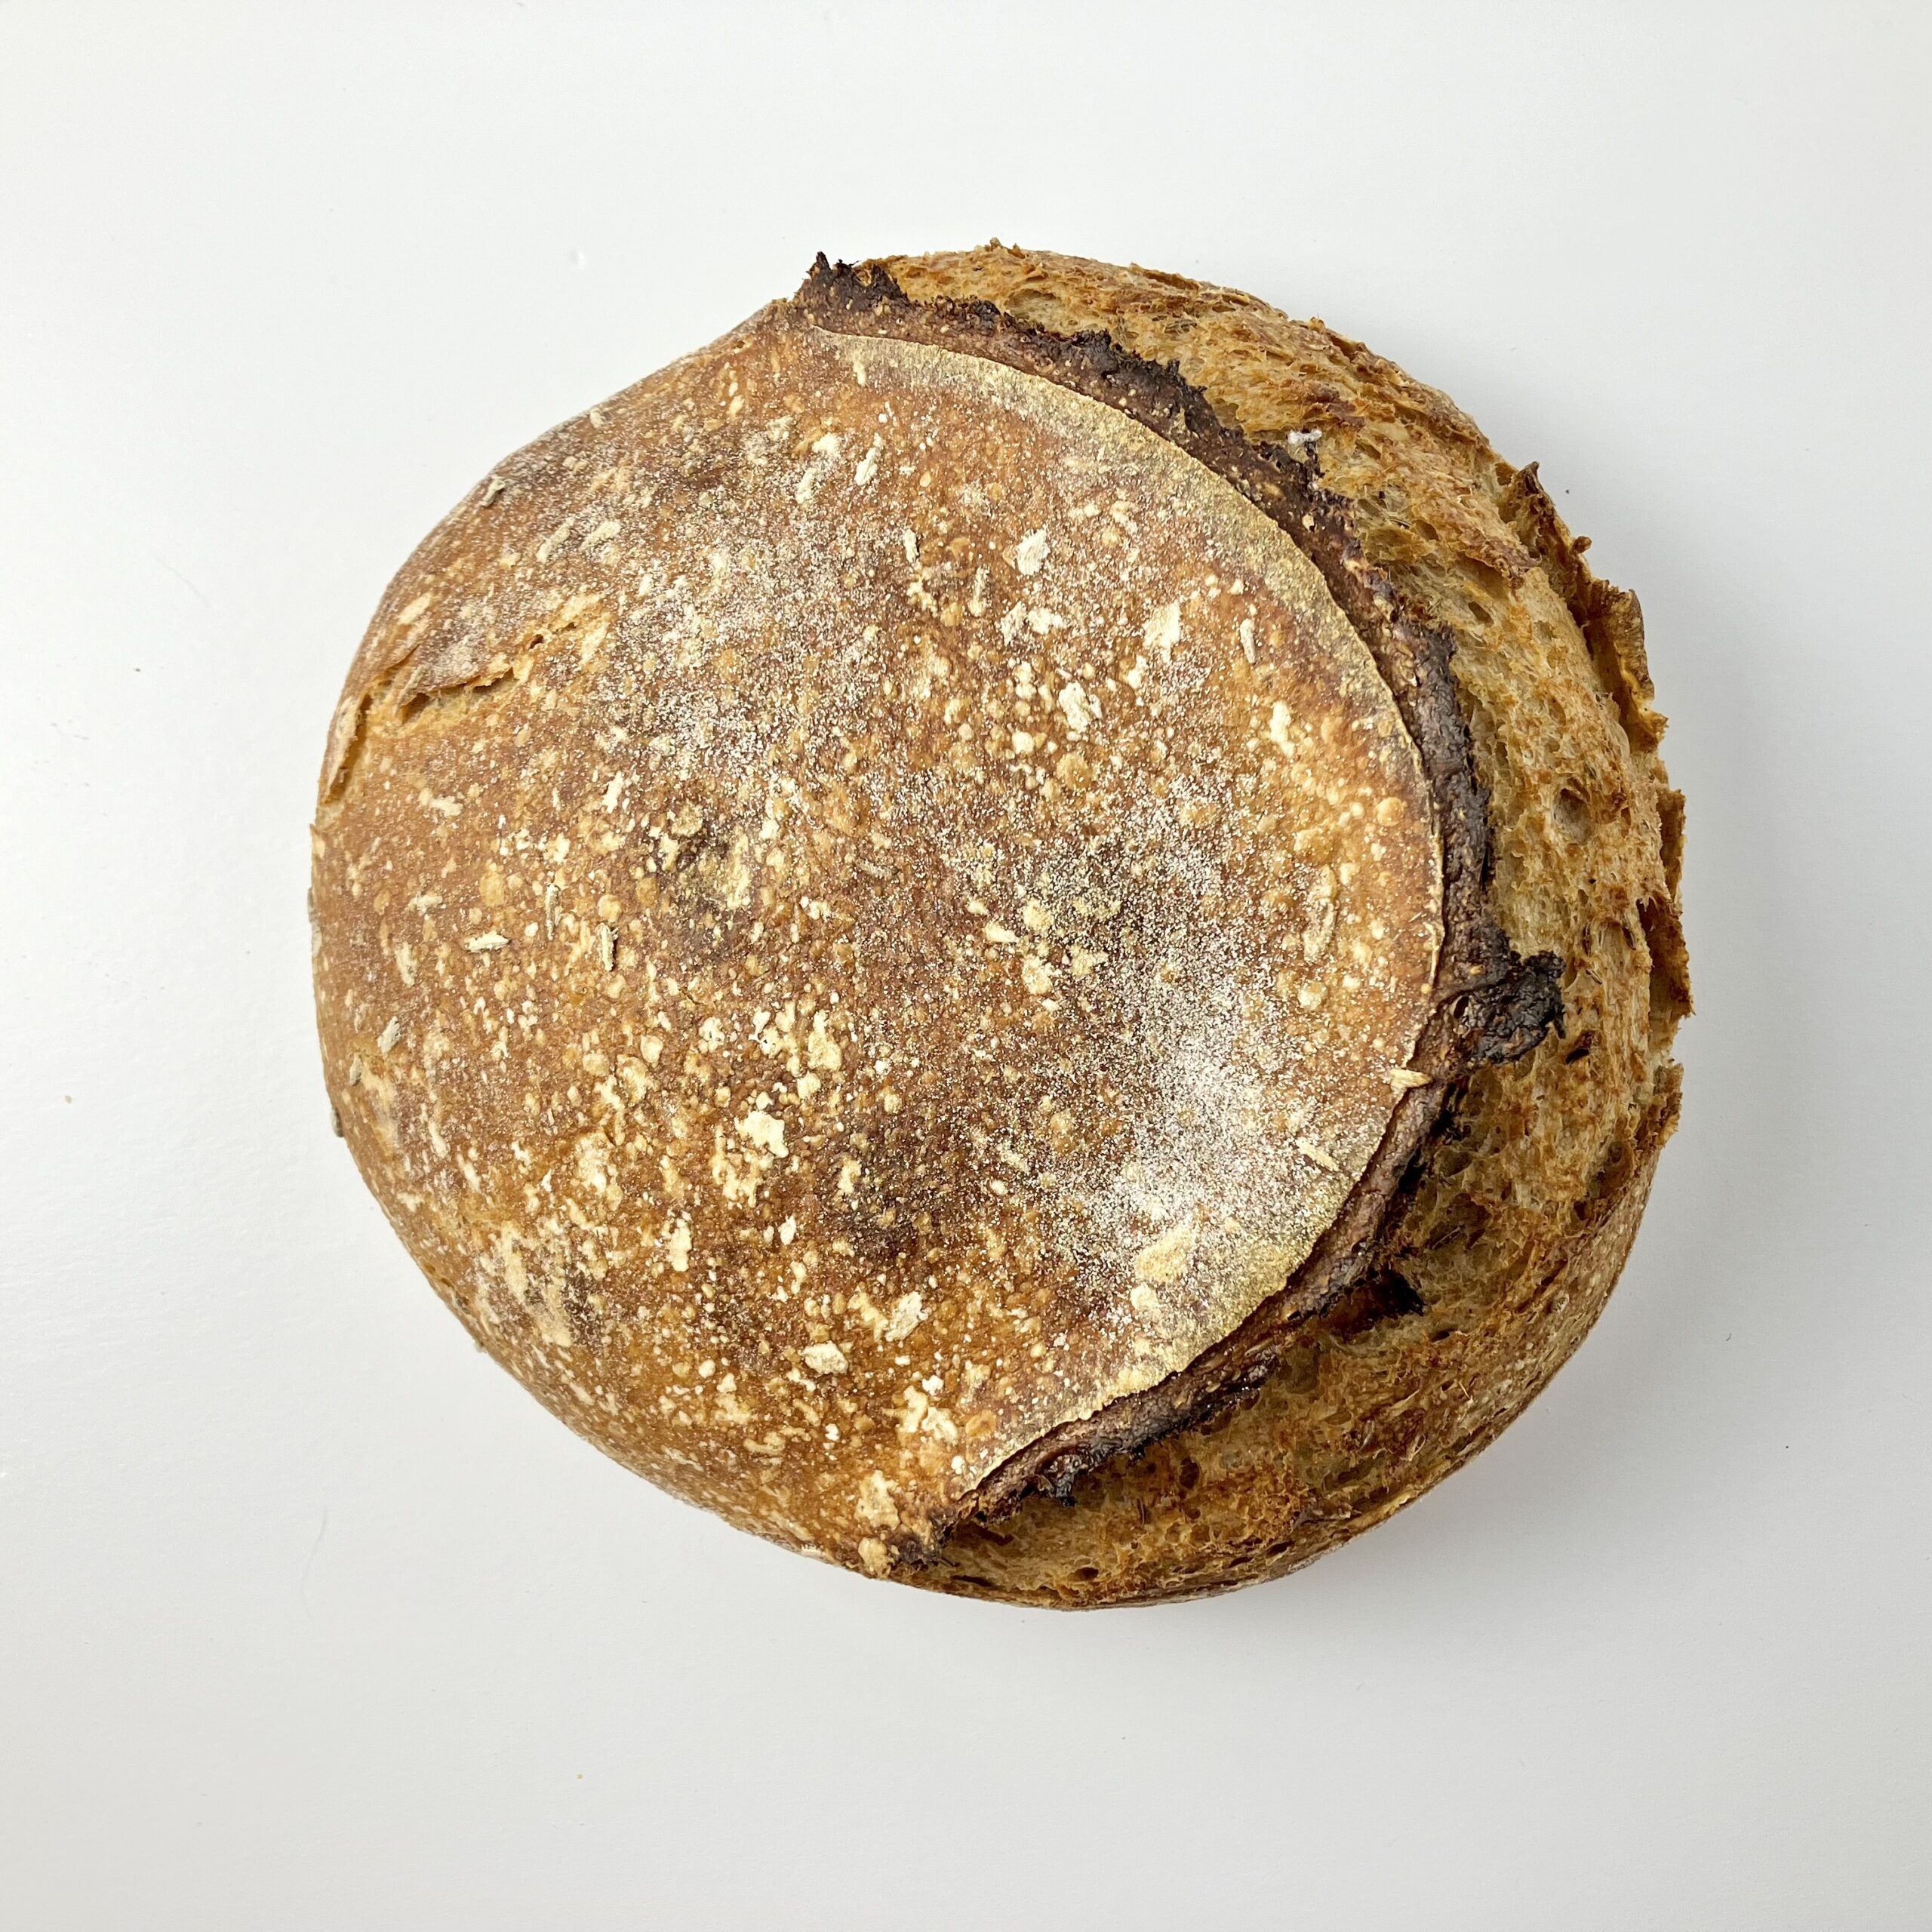 Sourdough Rustic Rye Bread